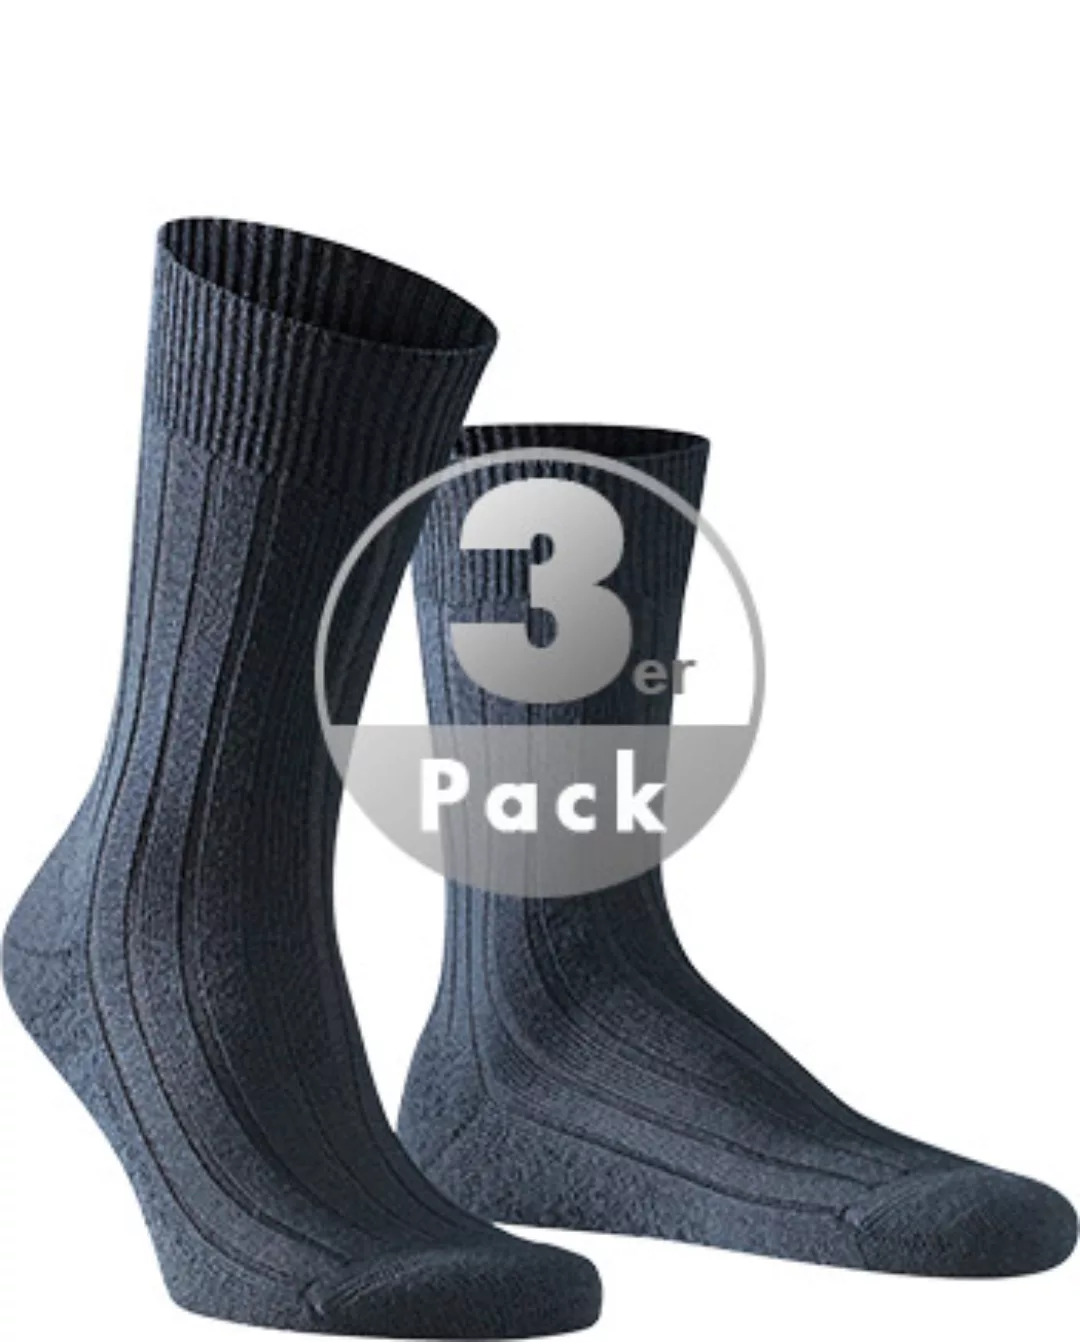 FALKE Teppich im Schuh Herren Socken, 45-46, Blau, Uni, Schurwolle, 14402-6 günstig online kaufen